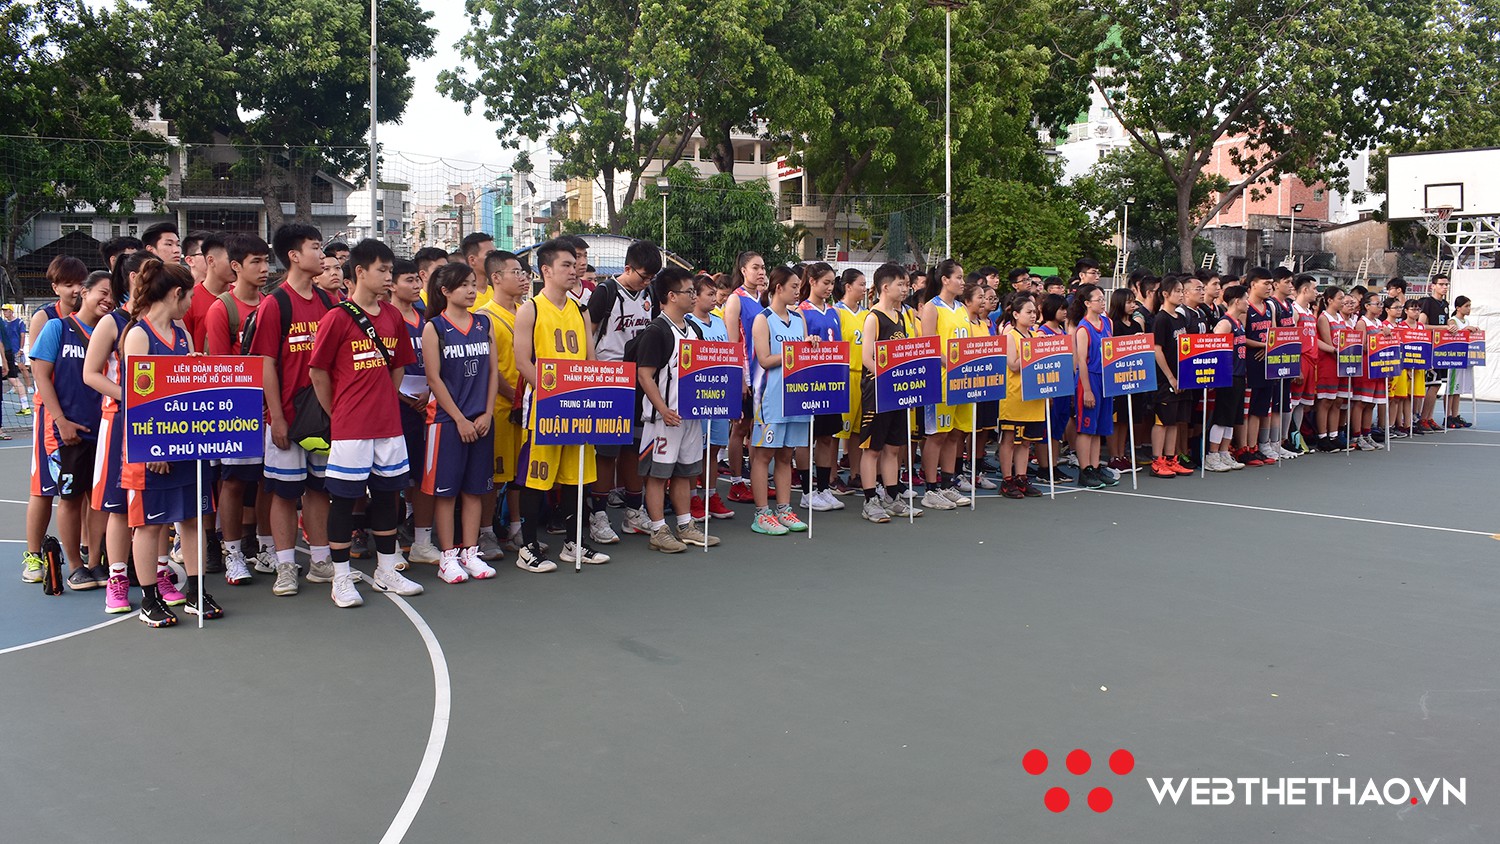 Khai mạc Giải bóng rổ Vô địch 3x3 Thành phố Hồ Chí Minh năm 2018 - Ảnh 2.